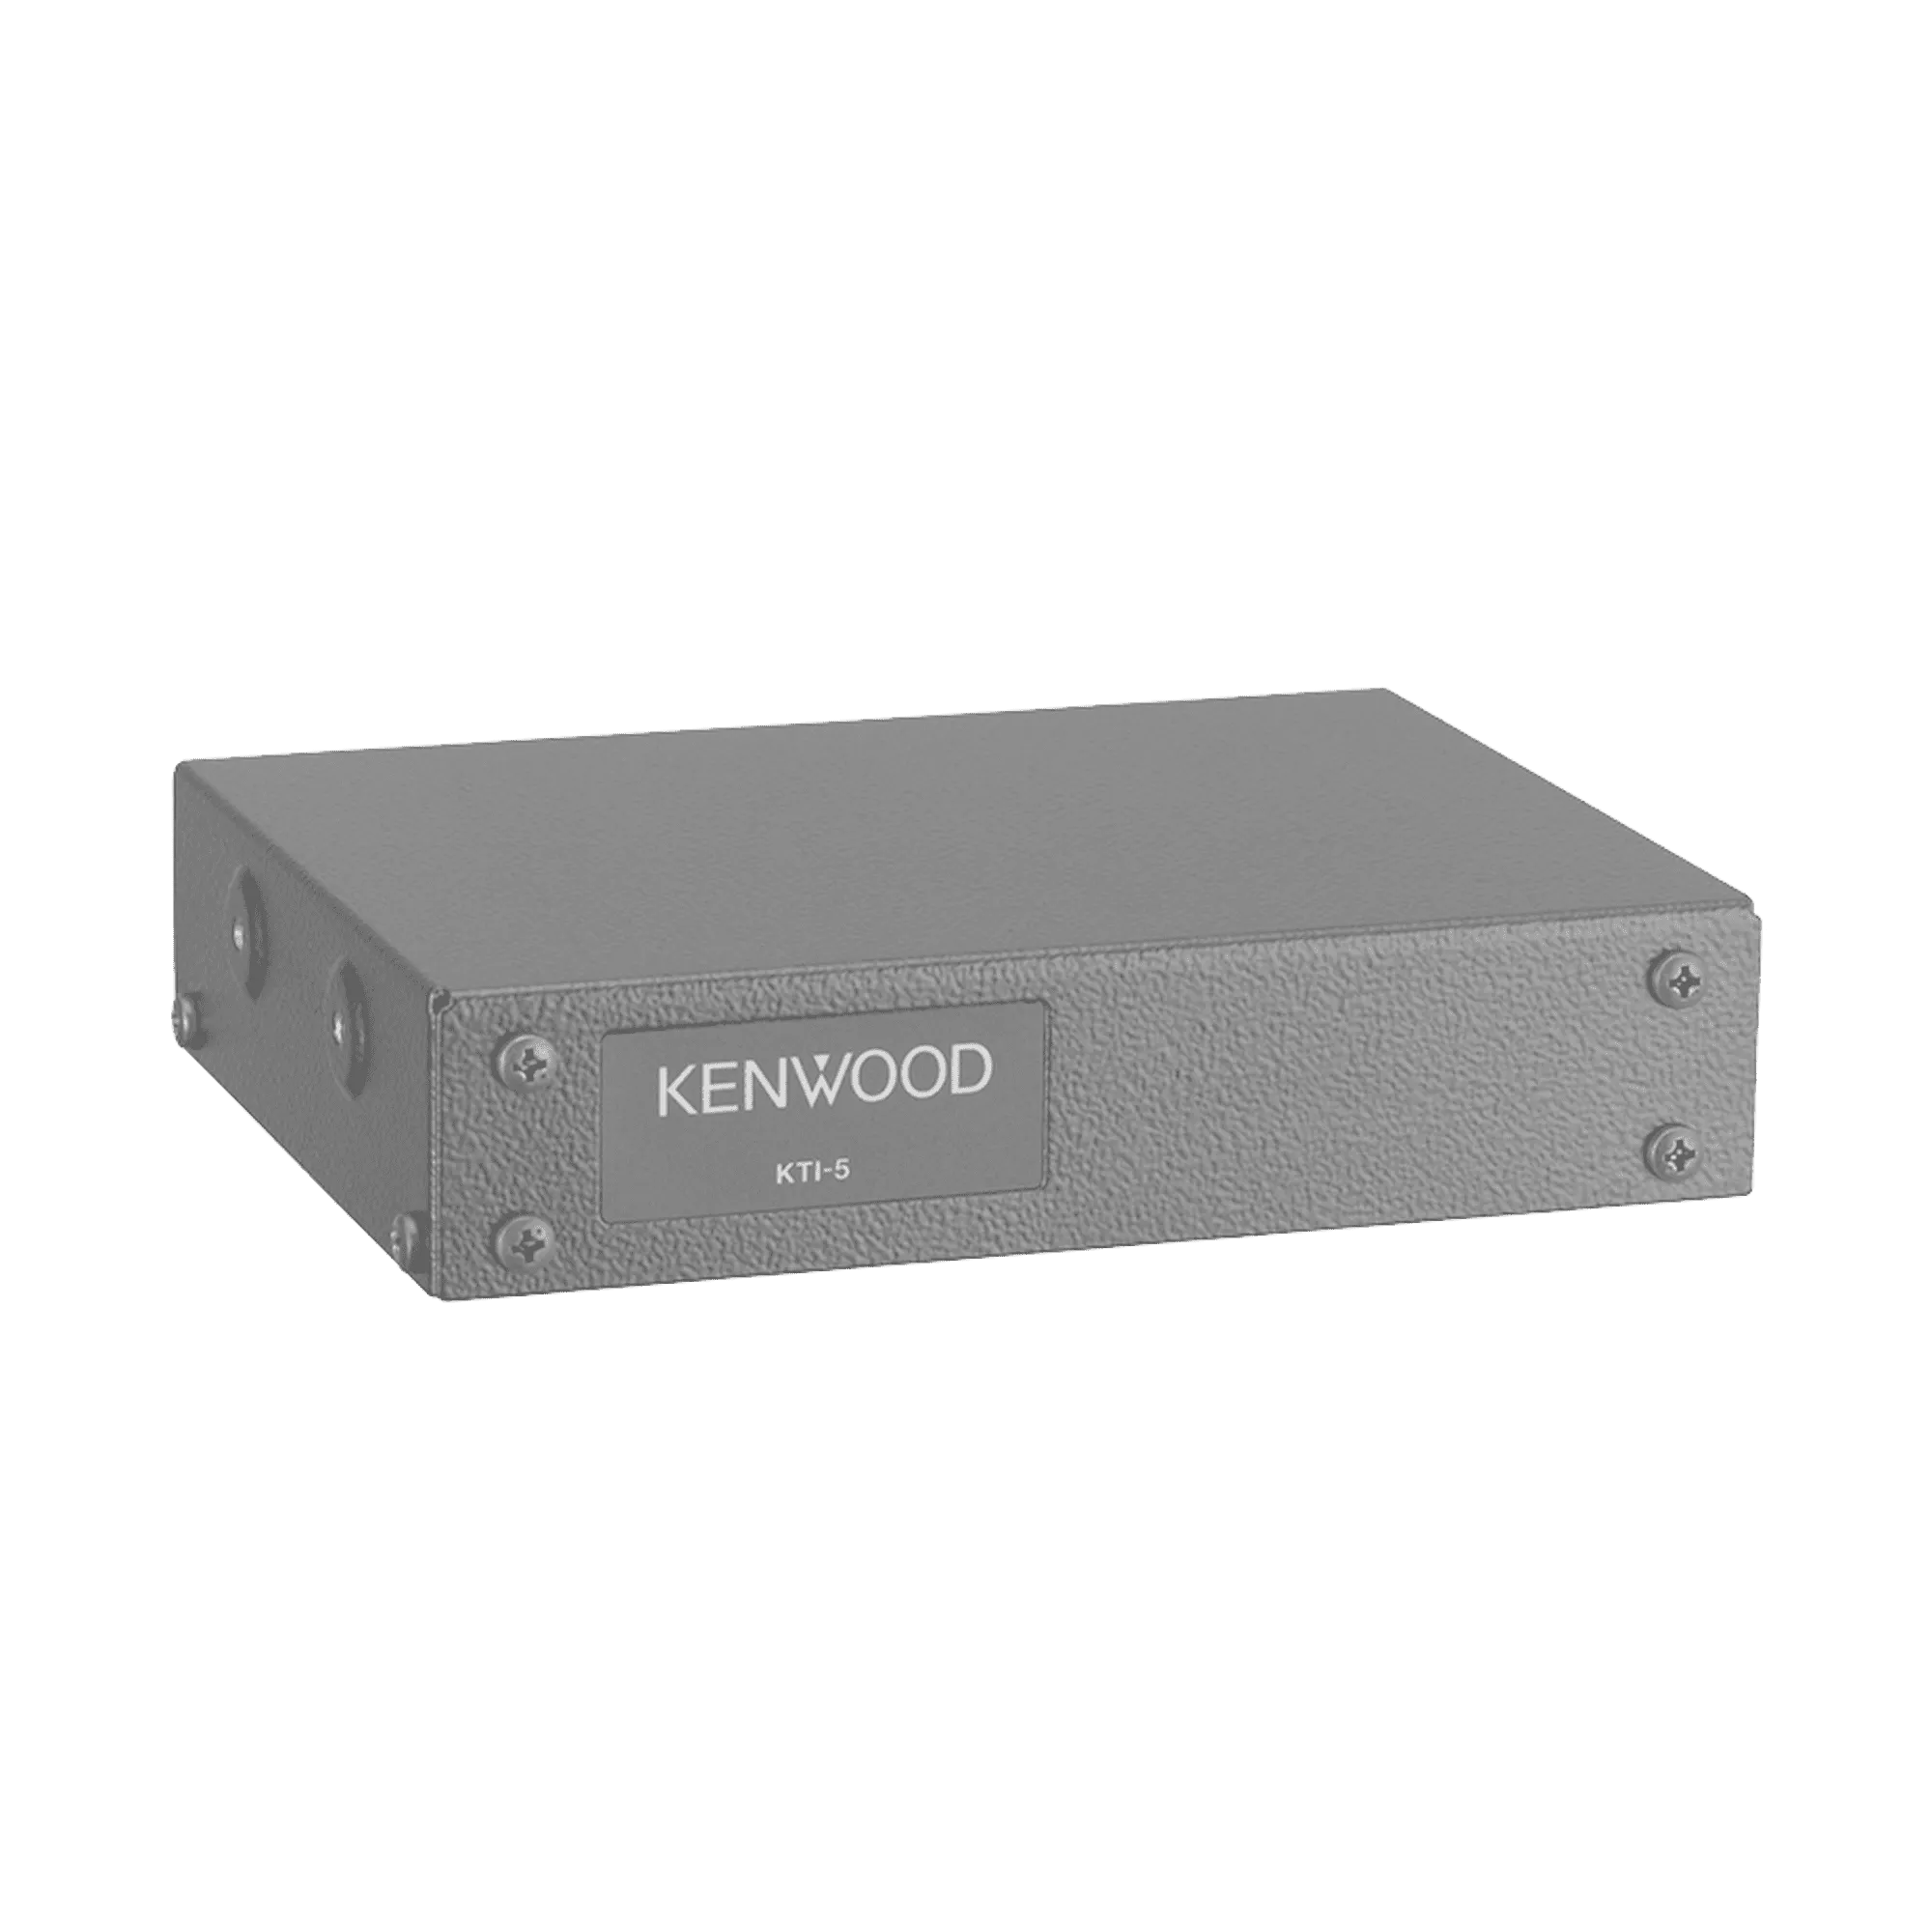 KTI-5M-KENWOOD-Modulo de interconexión IP para repetidores Kenwood DMR y administración remota de Troncal Tipo D